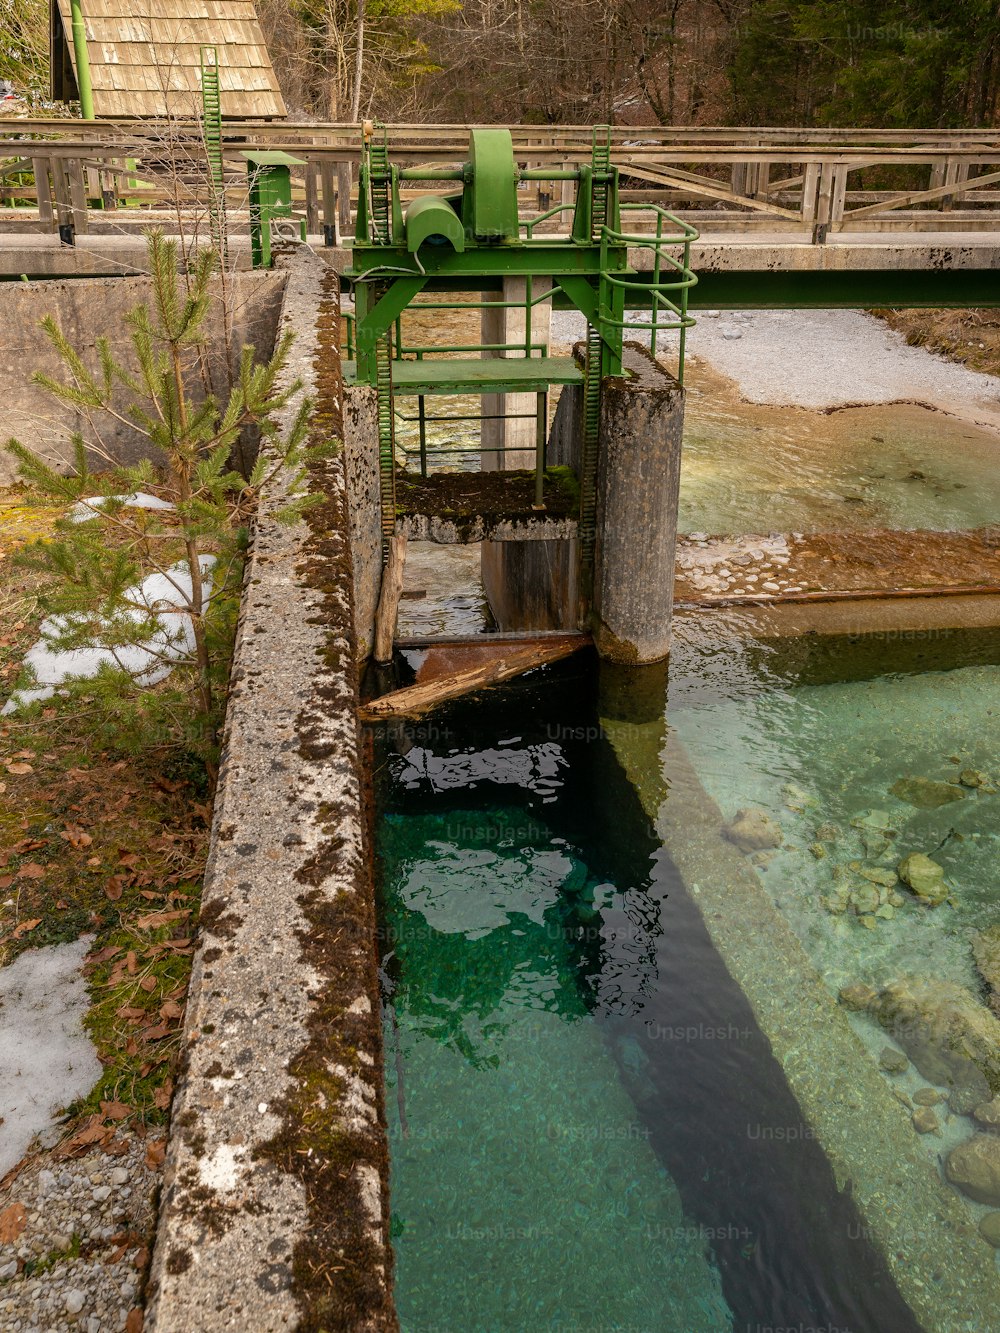 Une machine verte est au milieu d’un plan d’eau